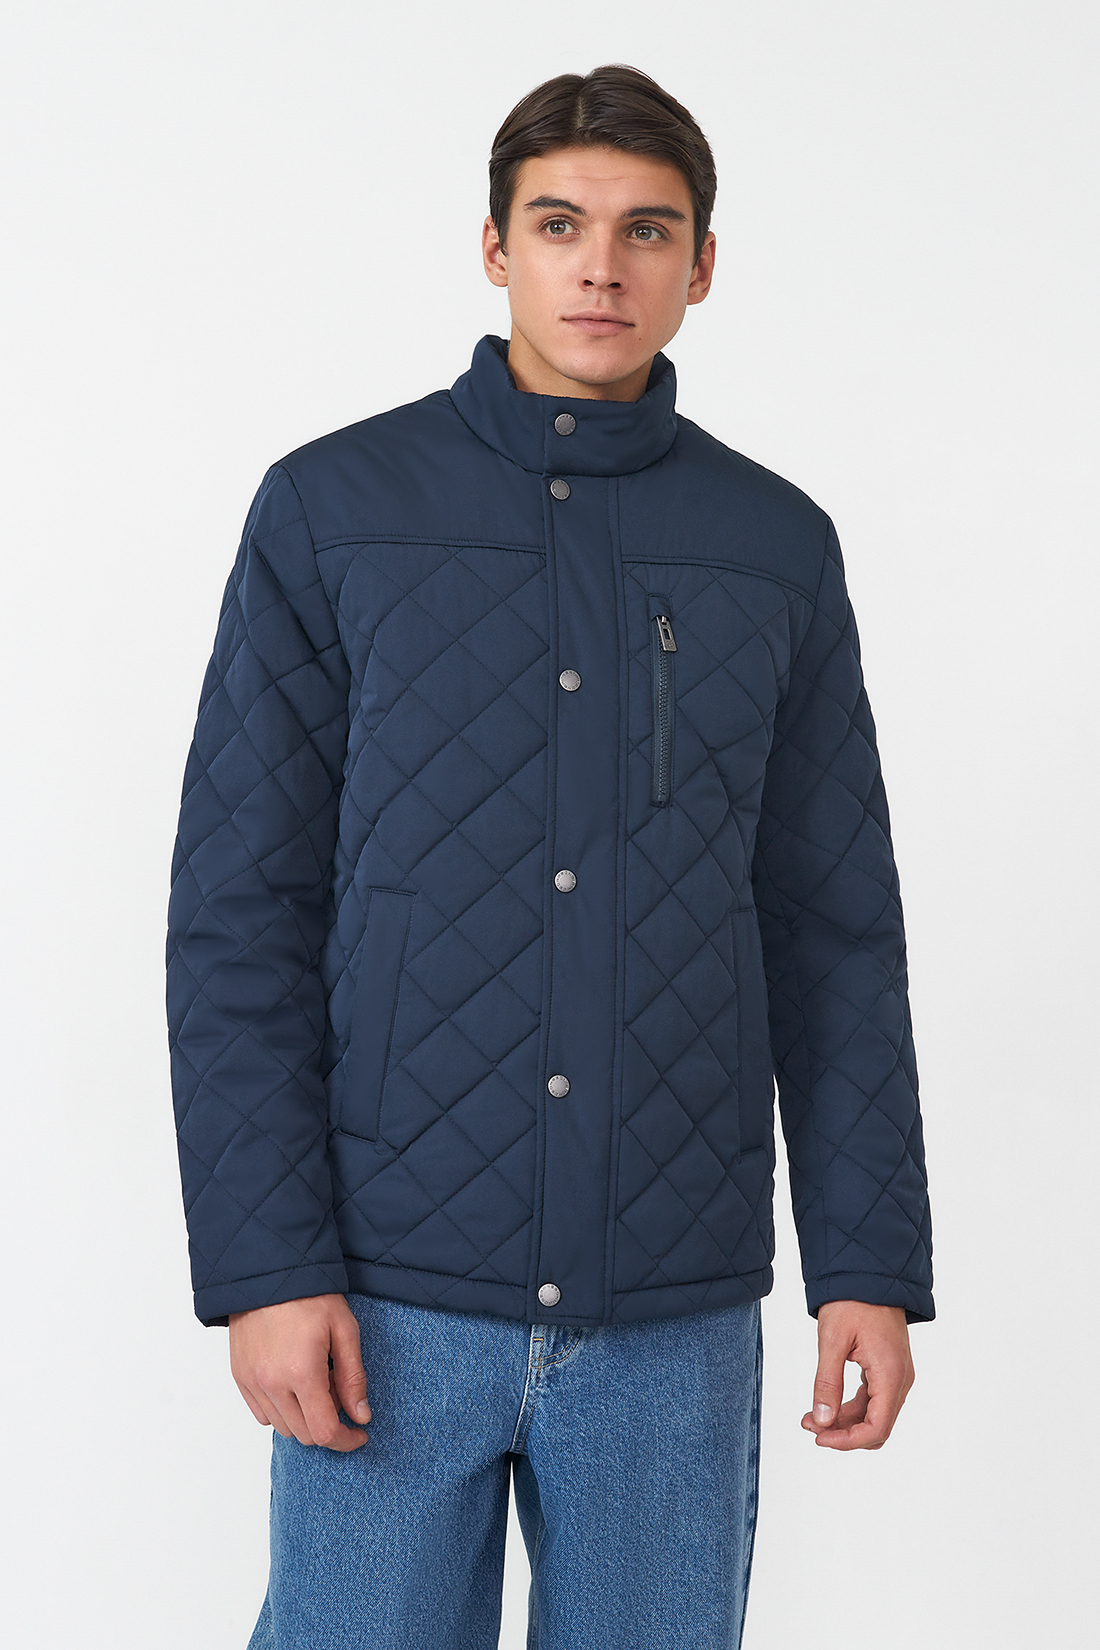 Зимняя куртка мужская Baon B5323506 синяя L